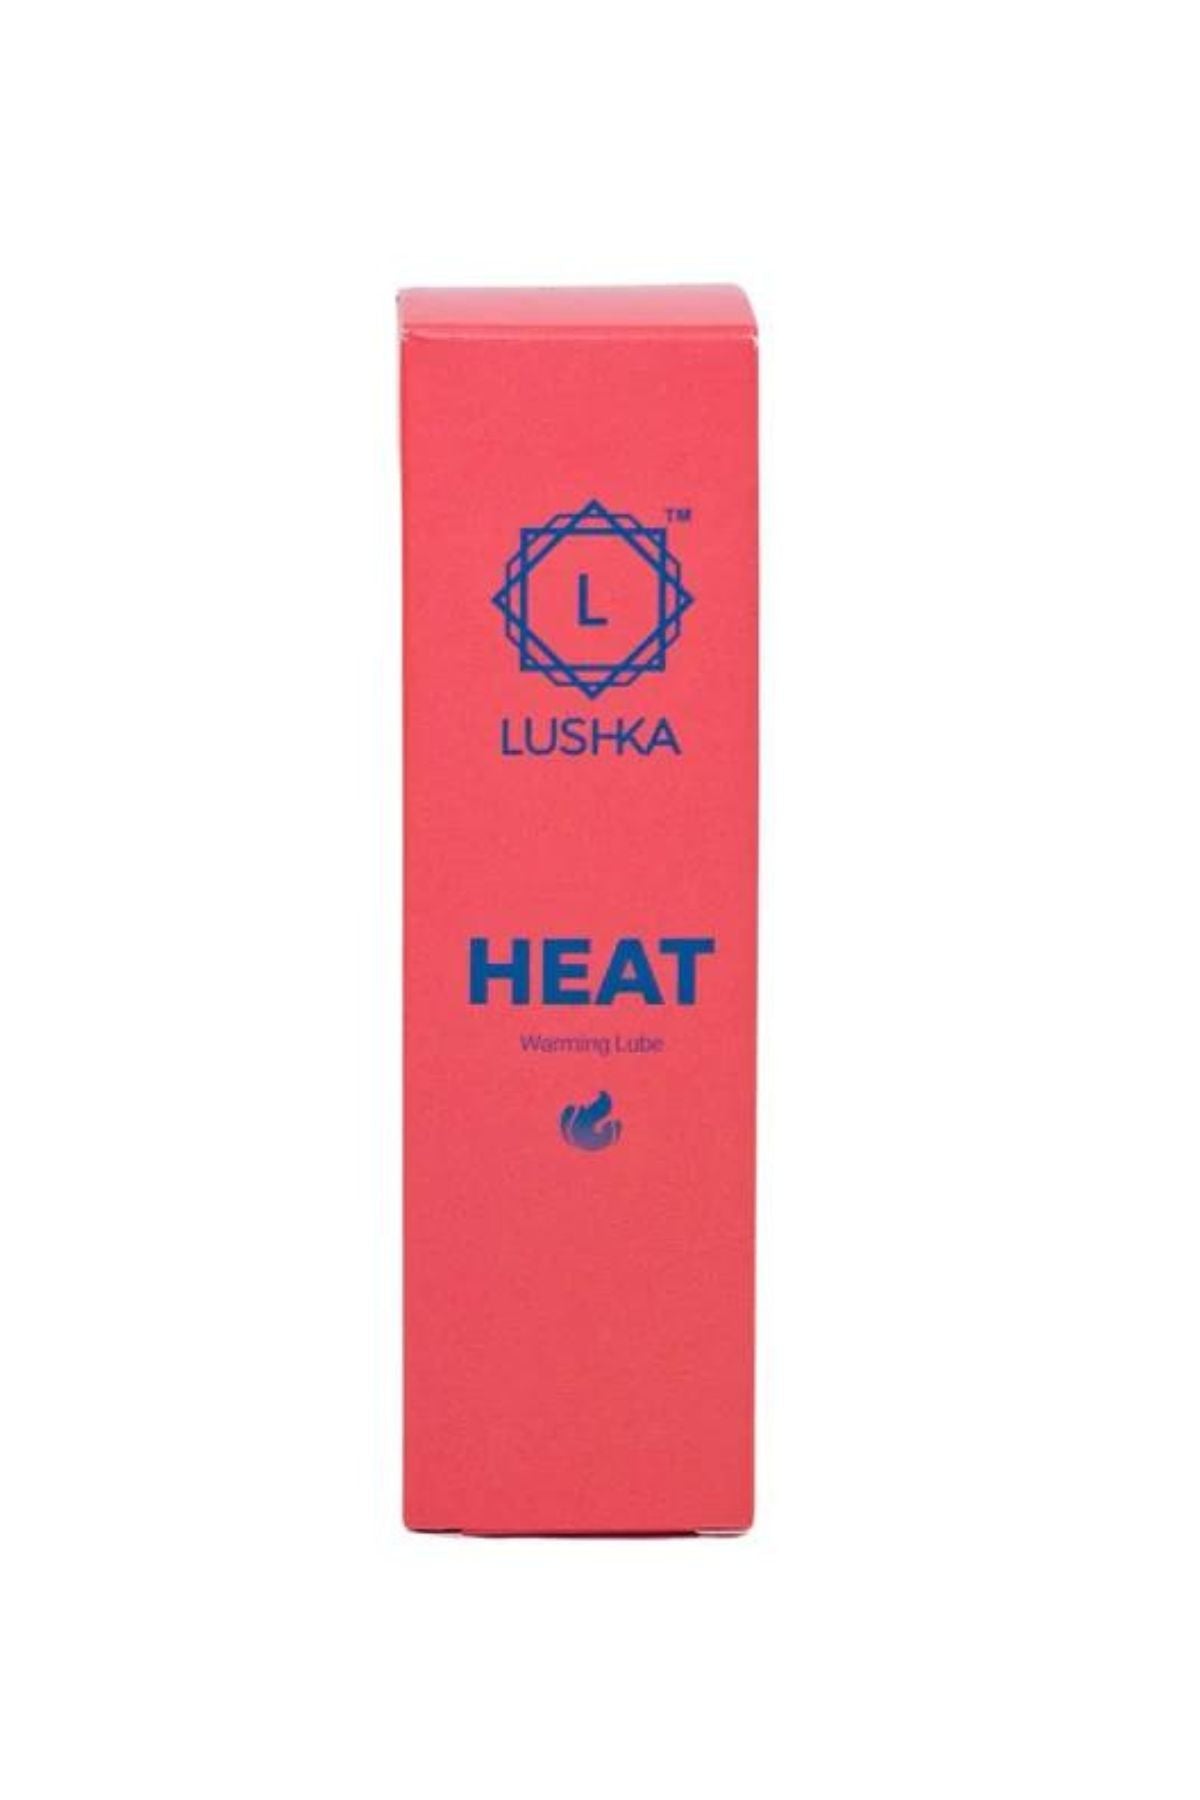 Heat | Warming Lubricant 150ml